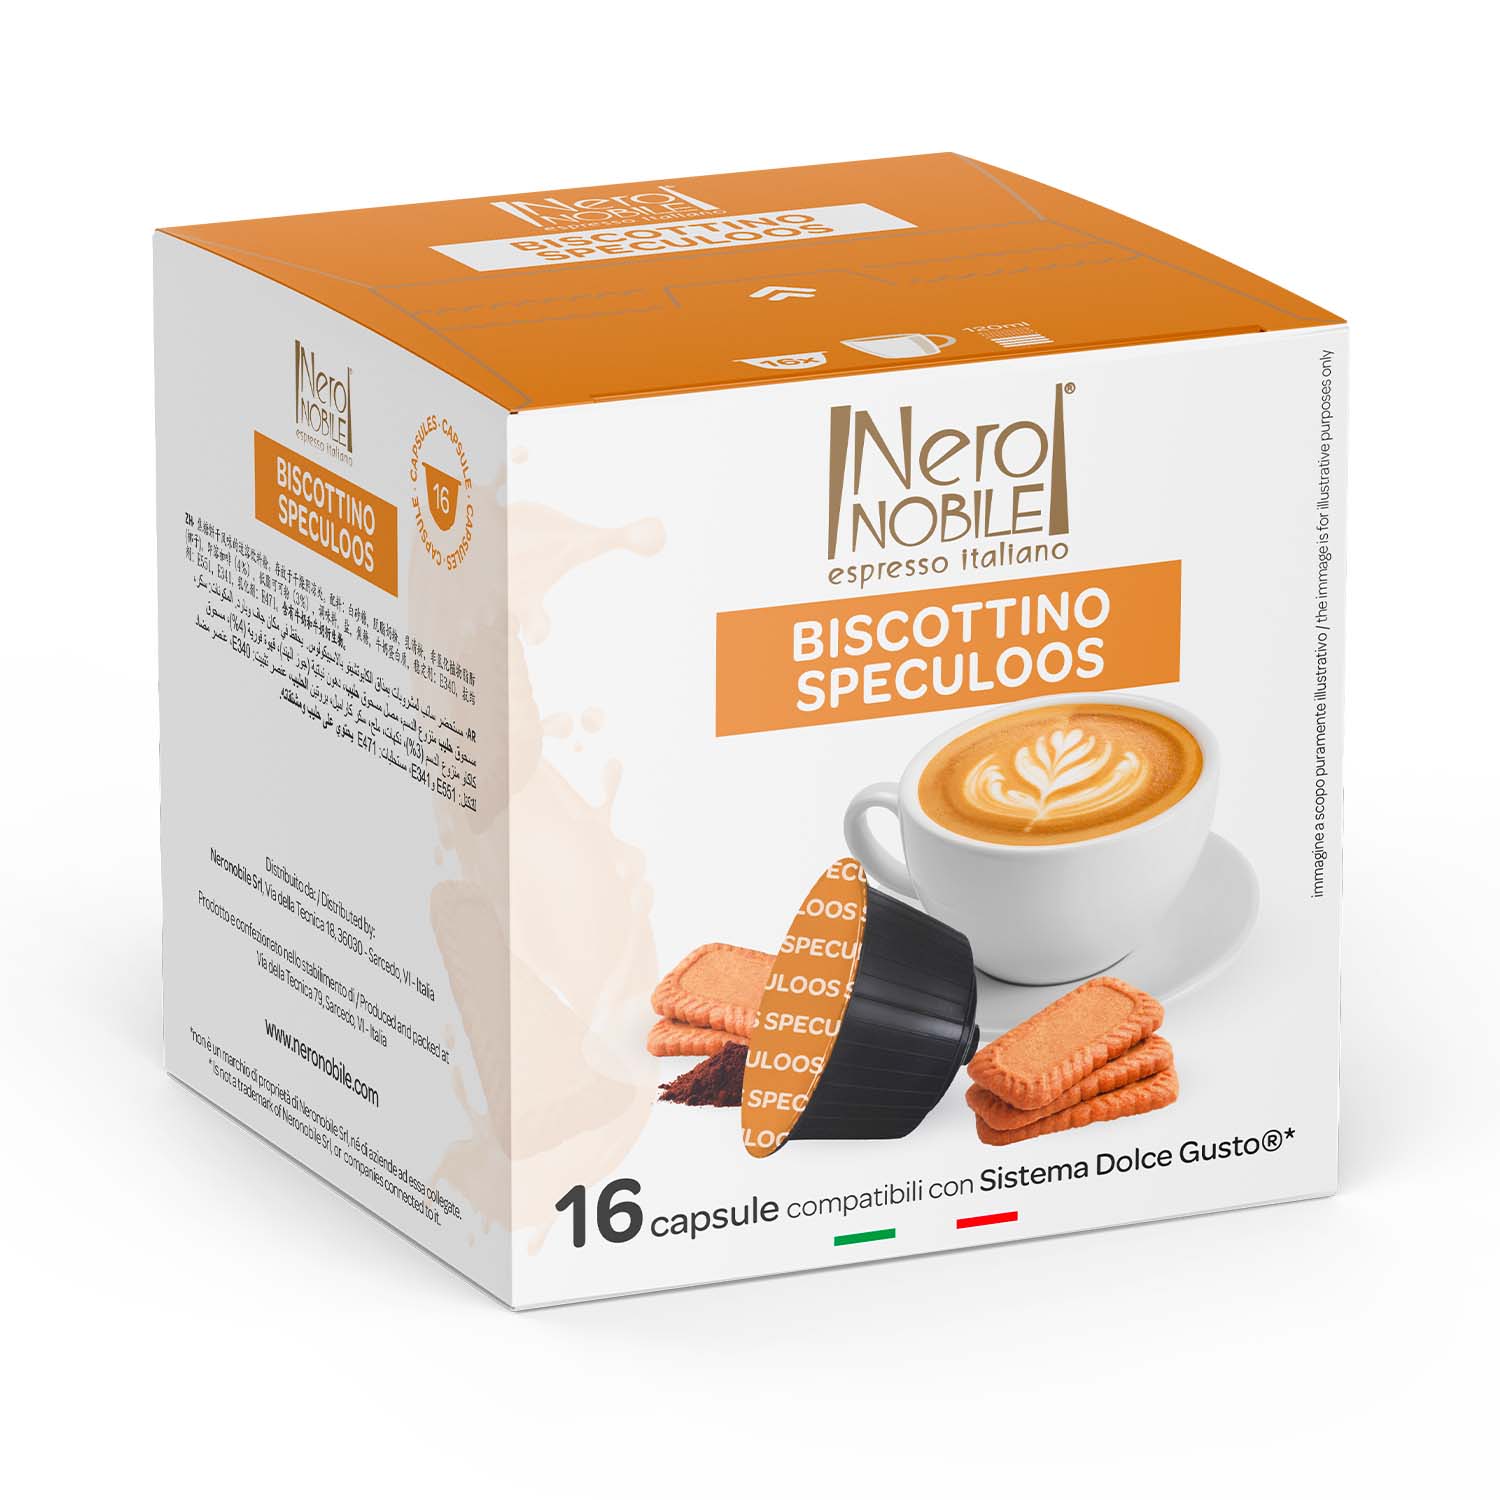 Nocciolino - Capsule Compatibili Nespresso - Nero Nobile